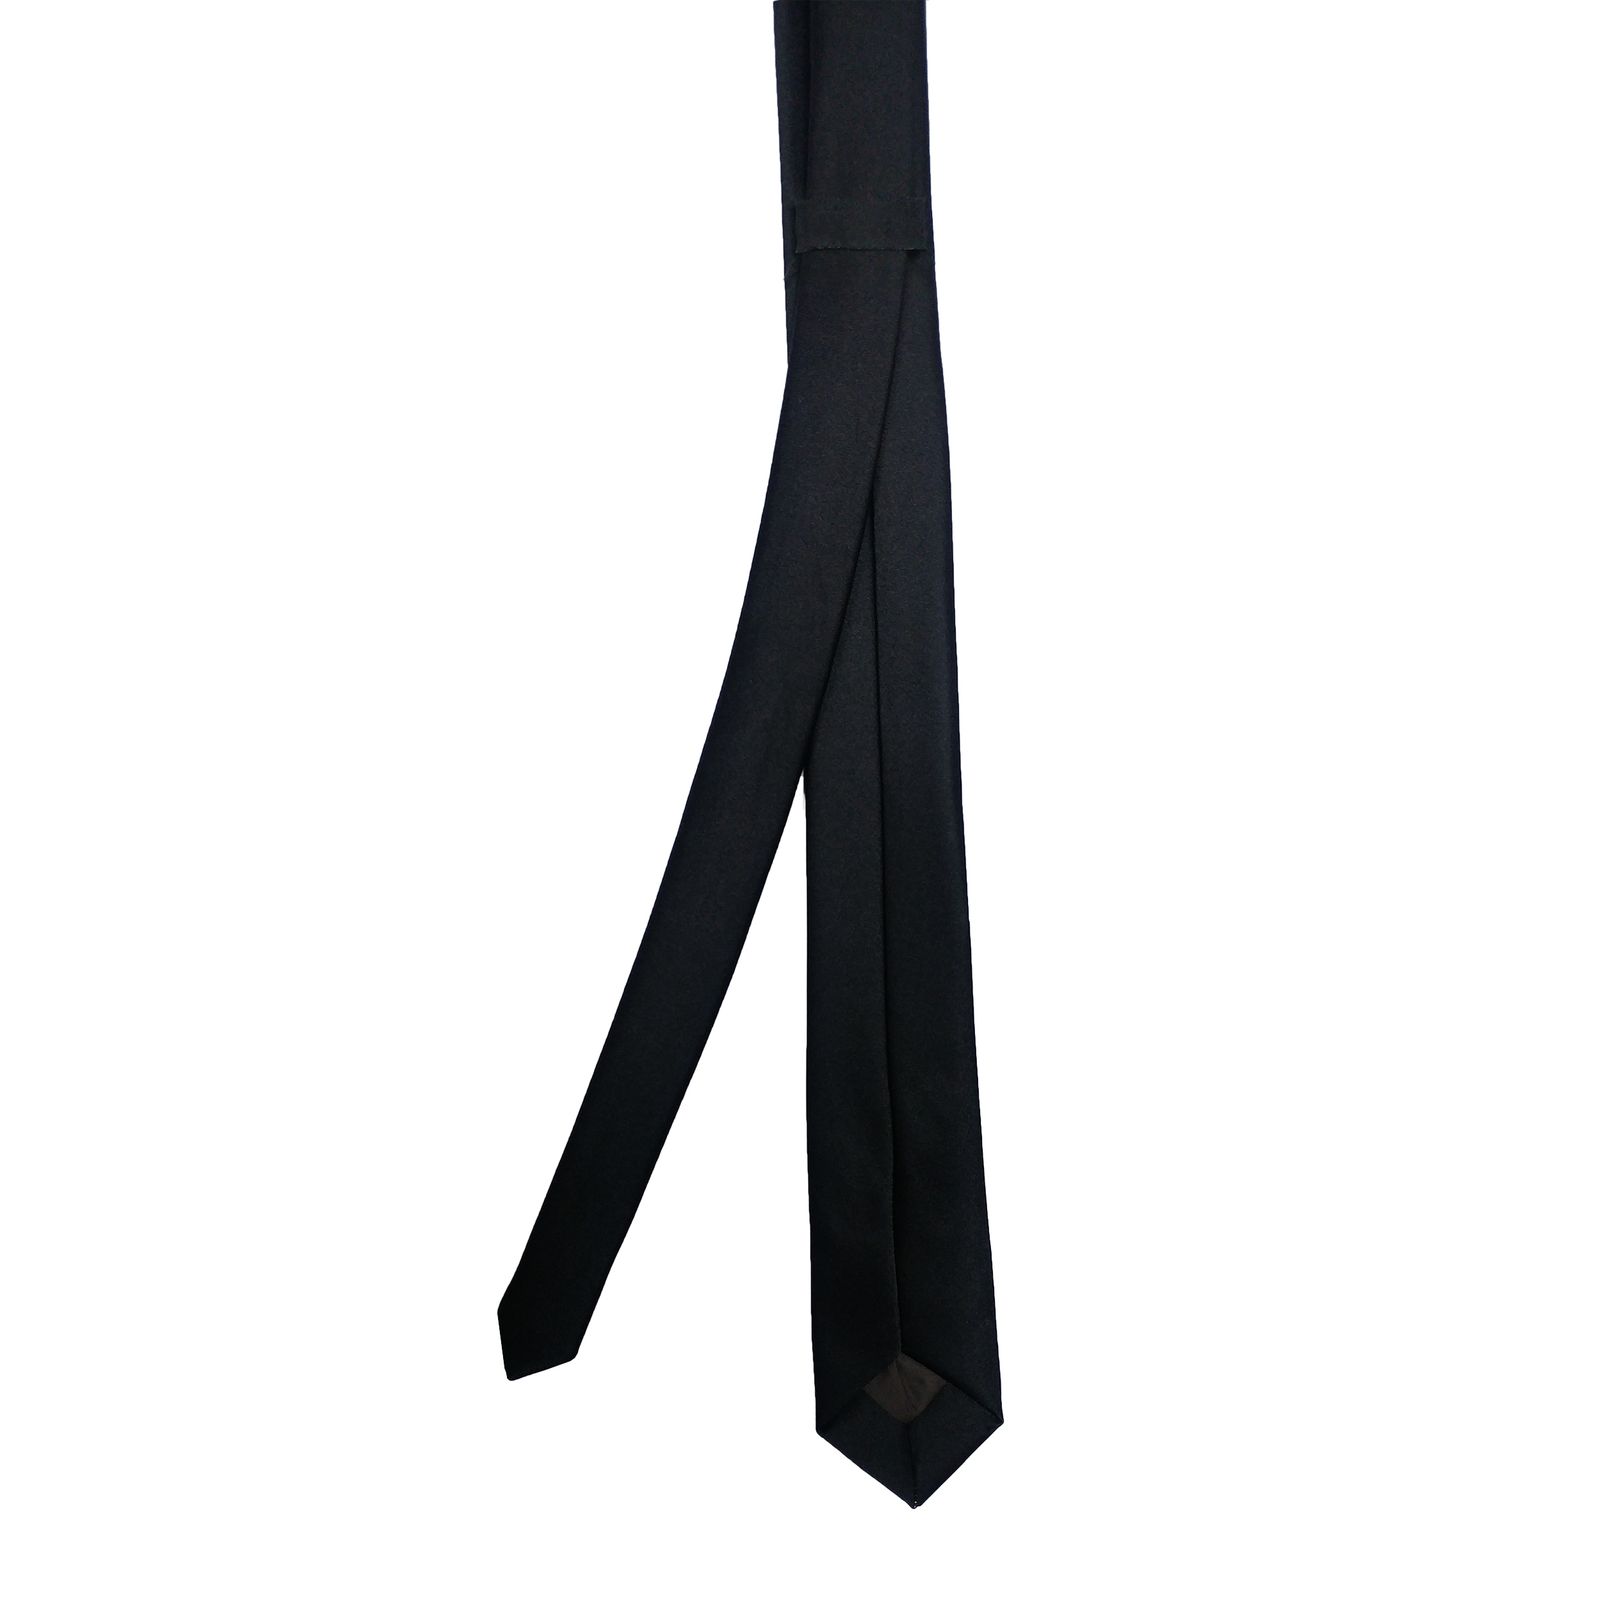  ست کراوات و پاپیون و دستمال جیب مردانه کد B3 -  - 10